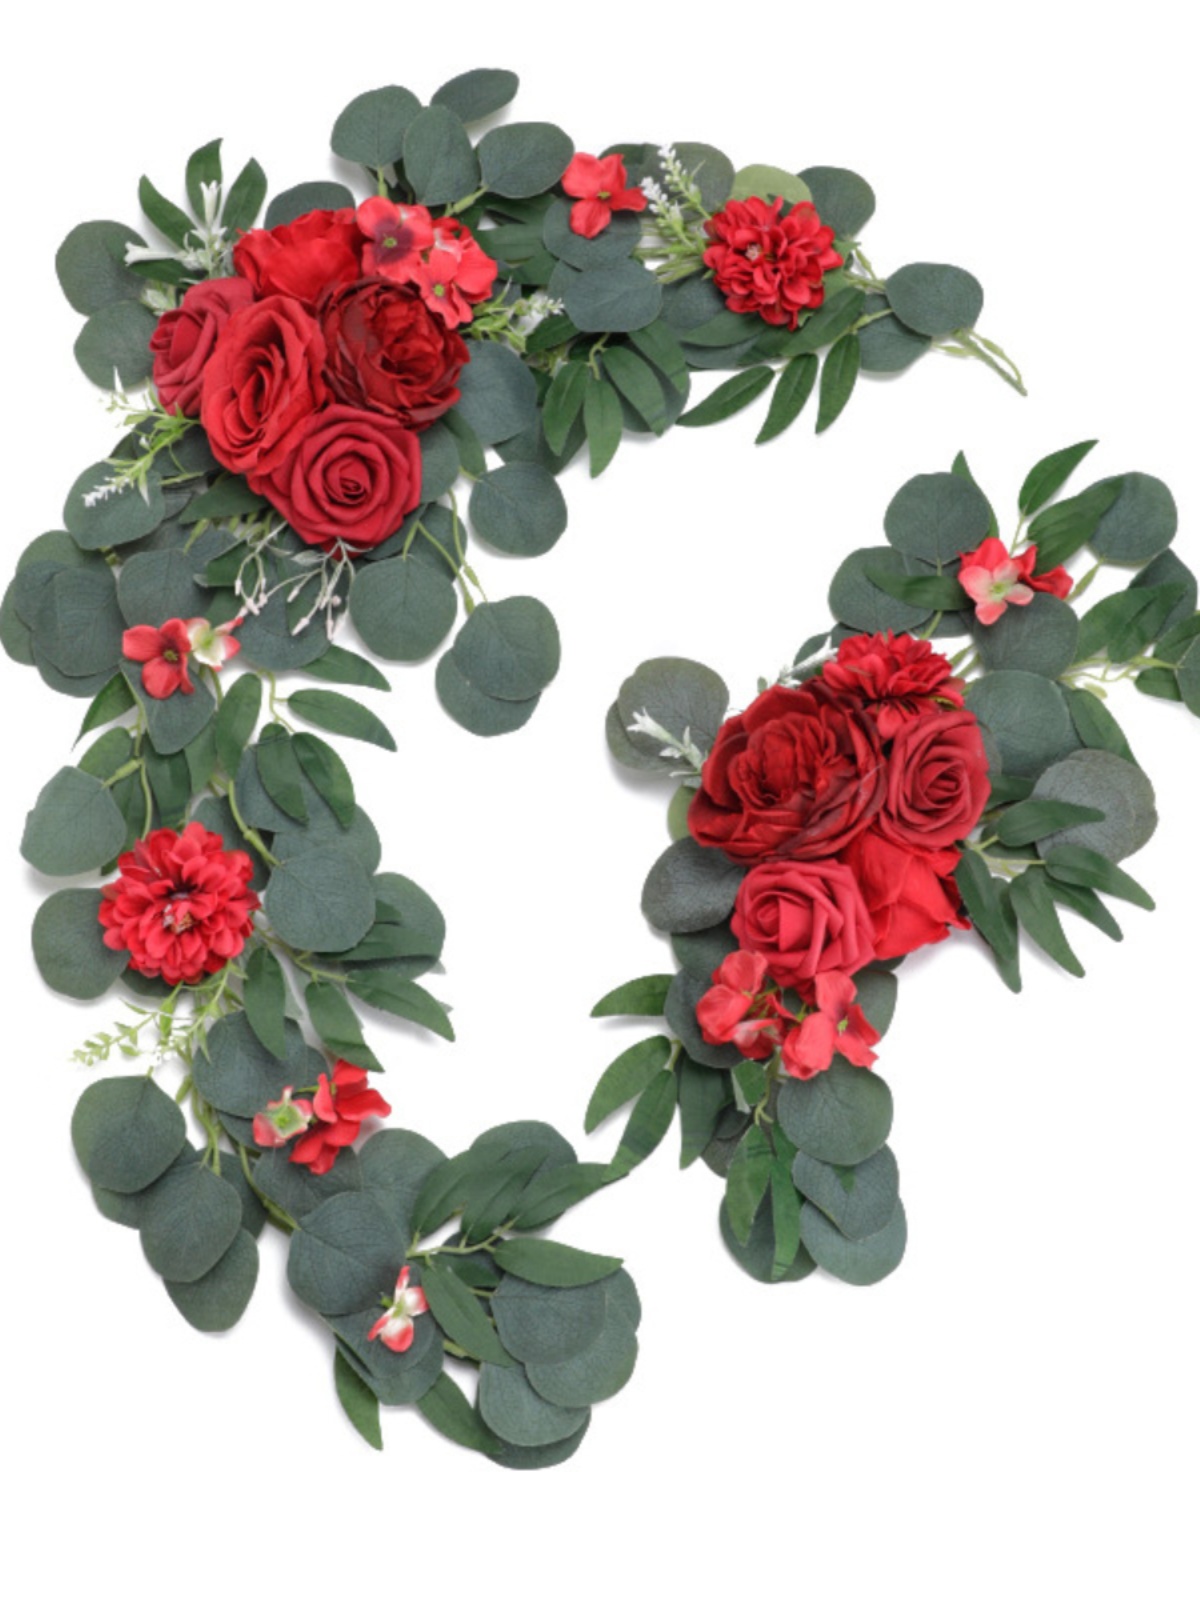 新品人造拱门花套装婚礼布置背景假花垂蔓装饰拱形花迎宾装饰玫瑰